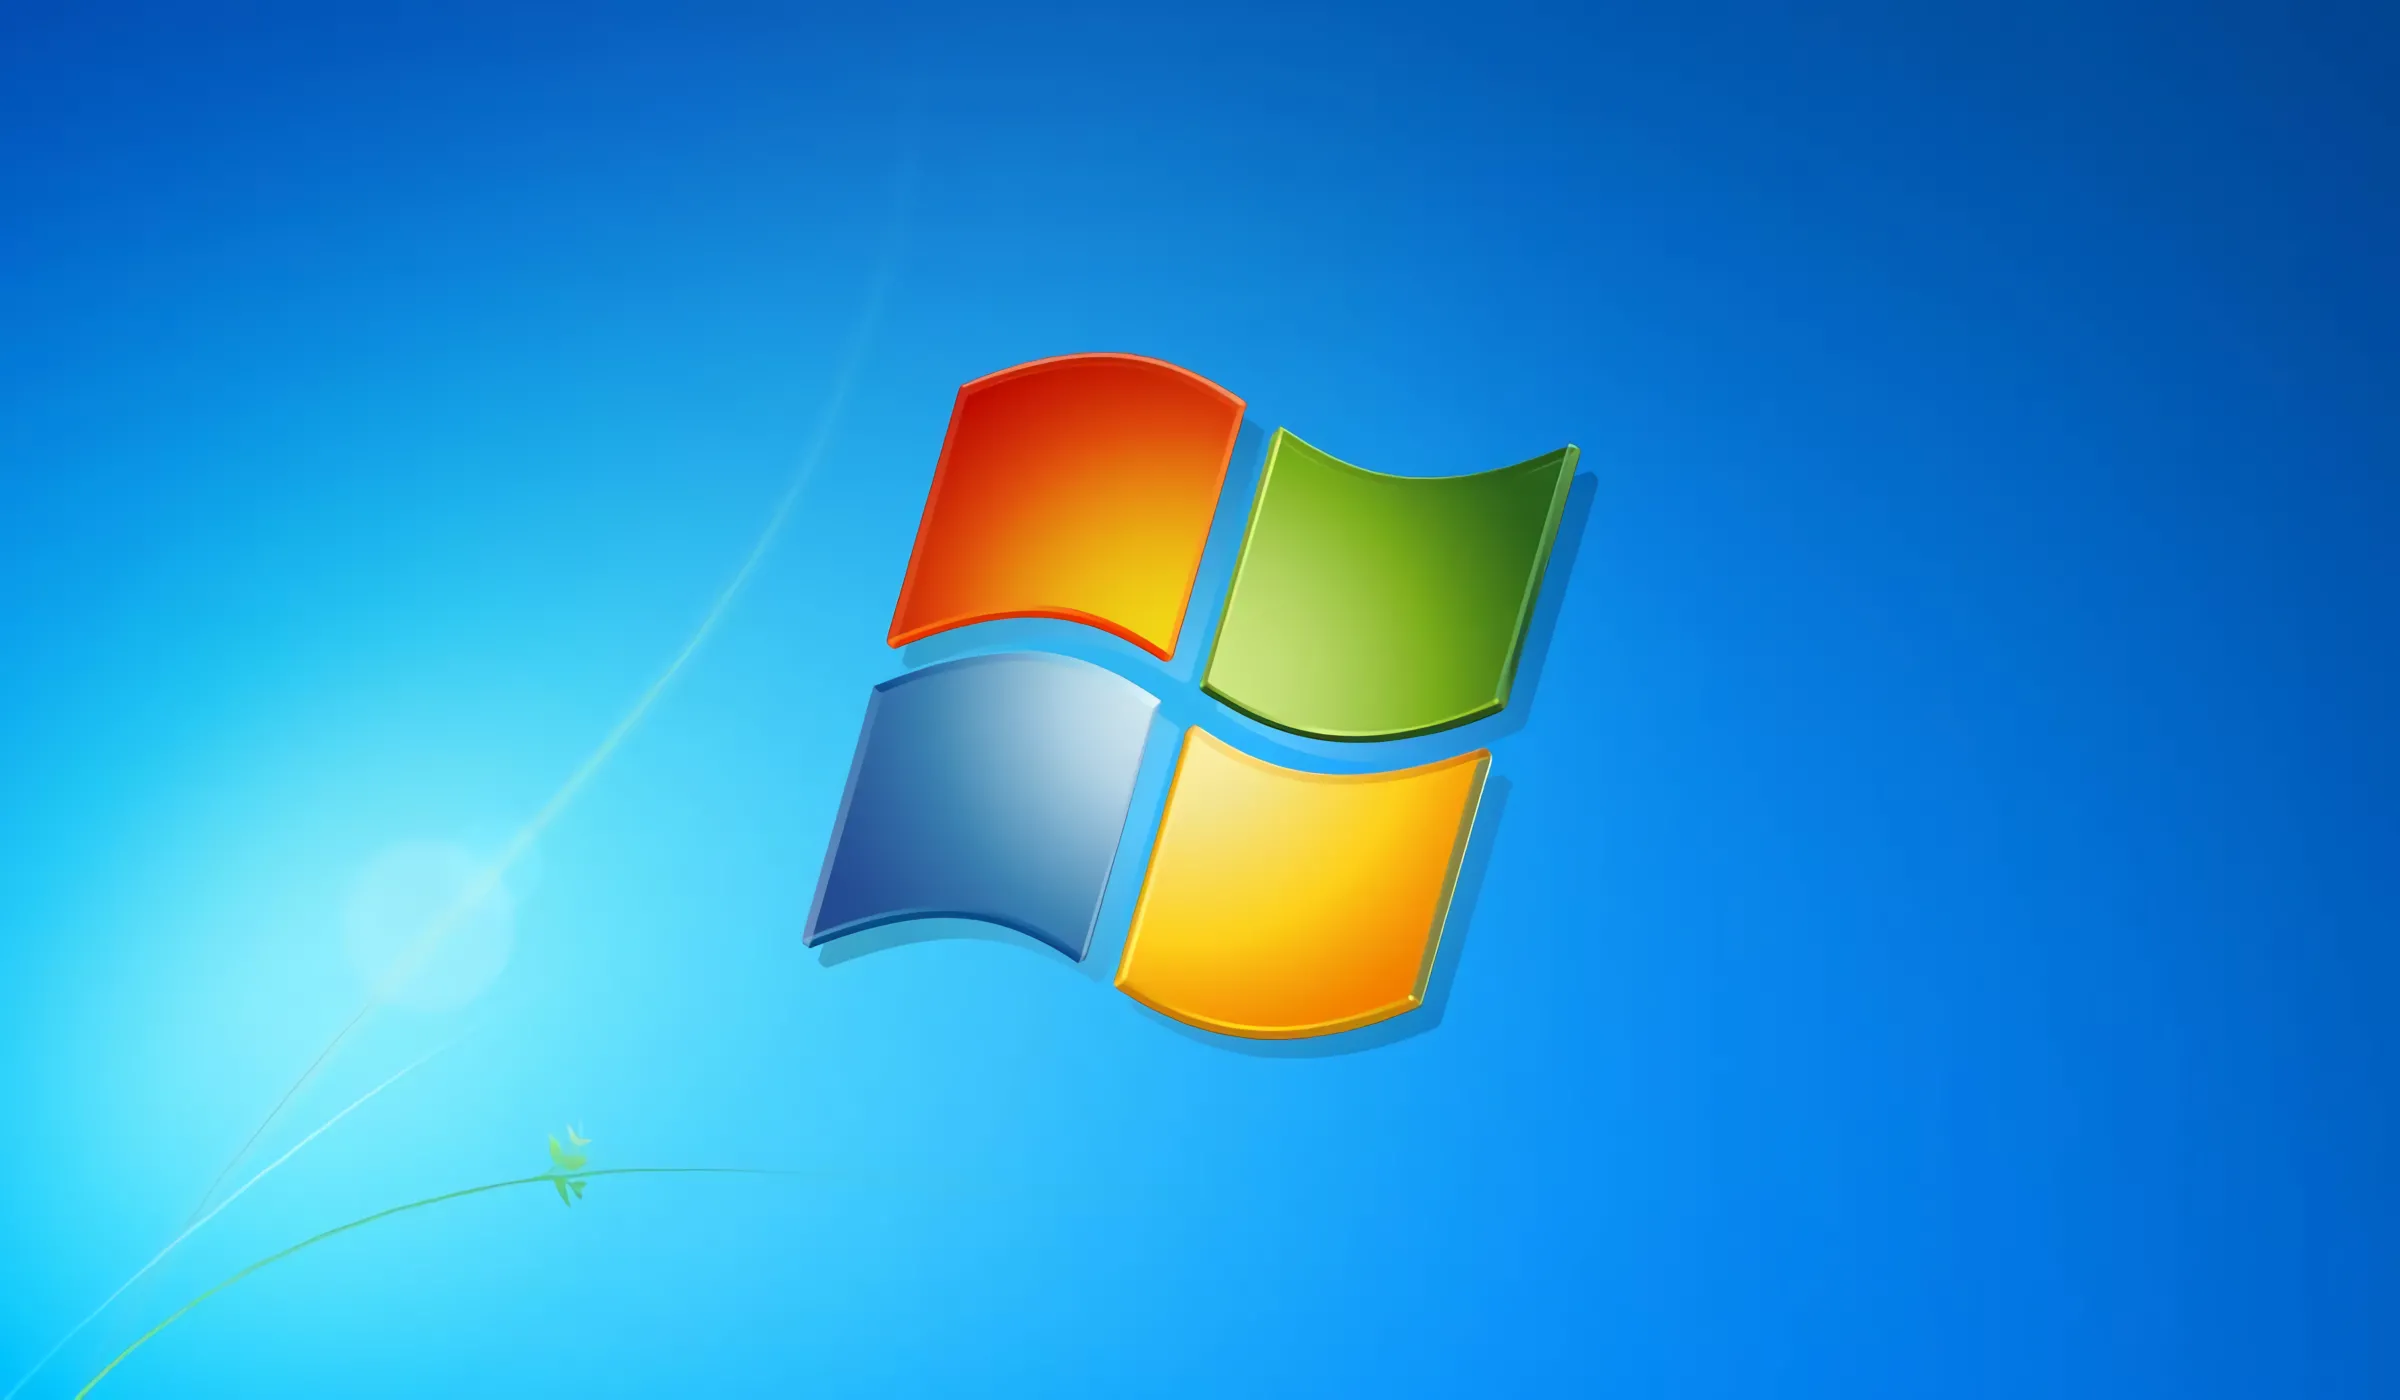 descubre si Windows 7 sigue siendo un buen Sistema Operativo en 2023